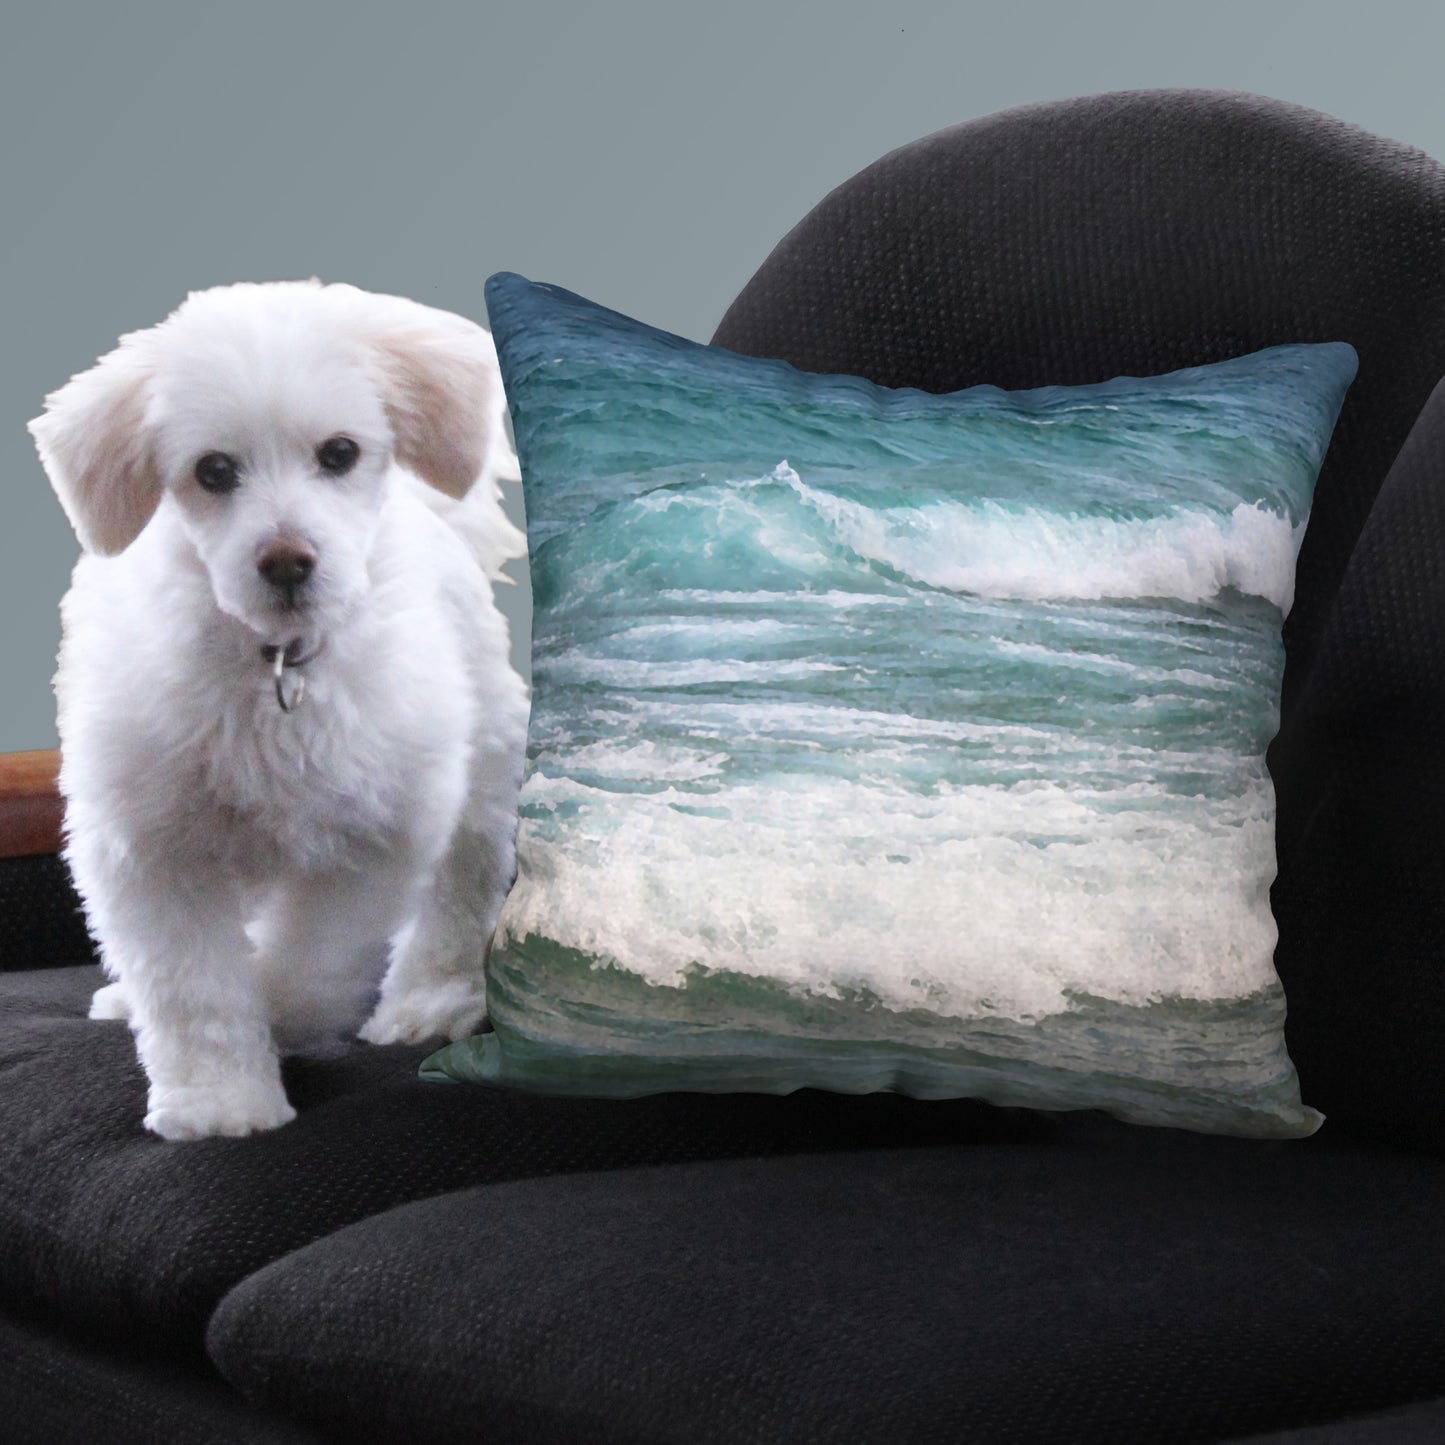 Beach Waves Designer Pillow, 18"x18"